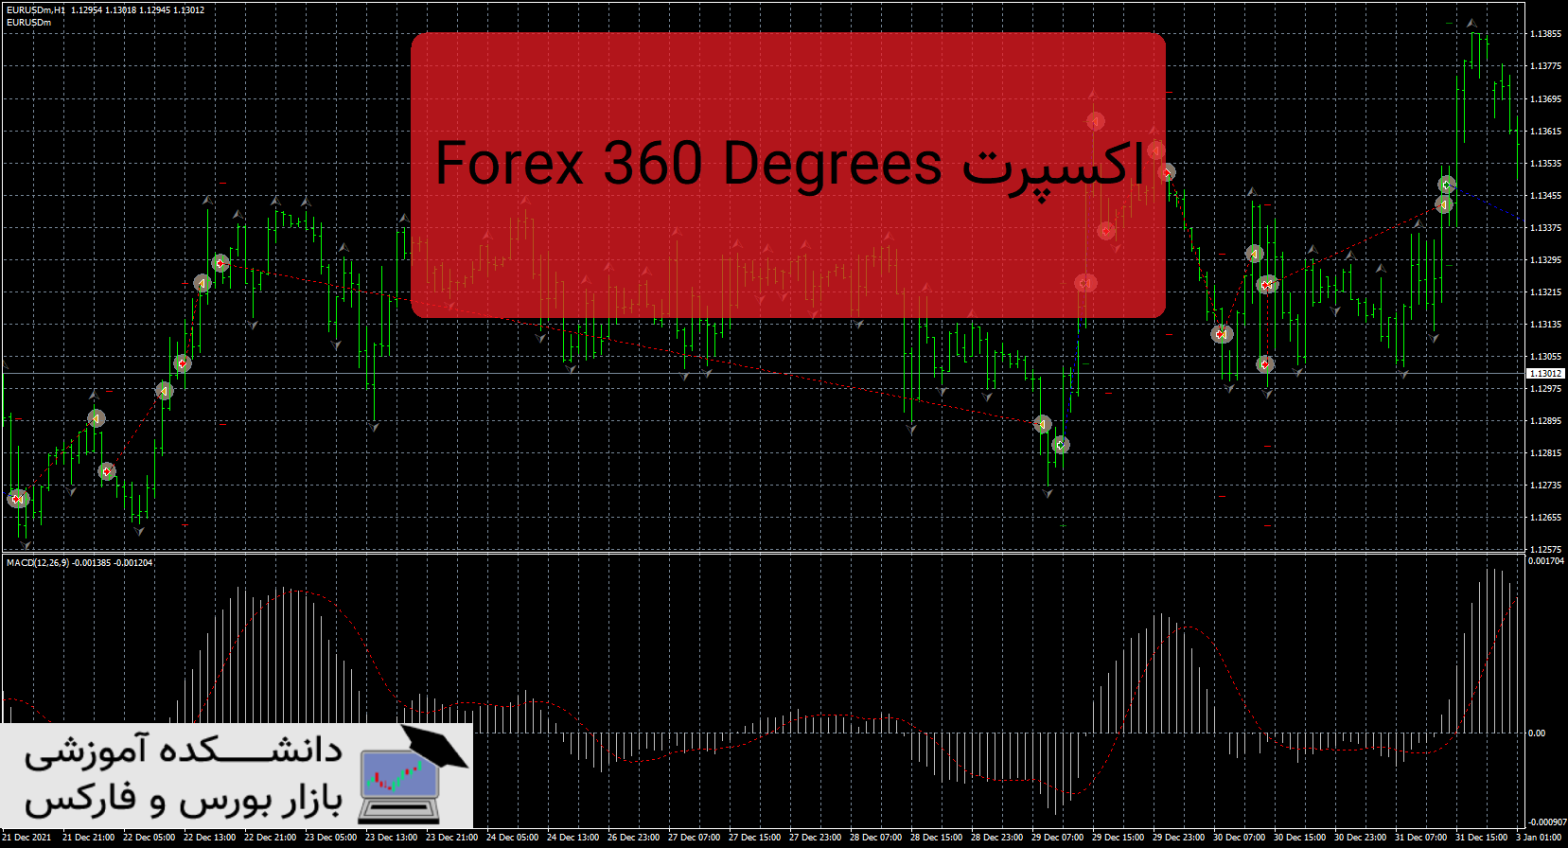 Forex 360 Degrees دانلود و معرفی اکسپرت